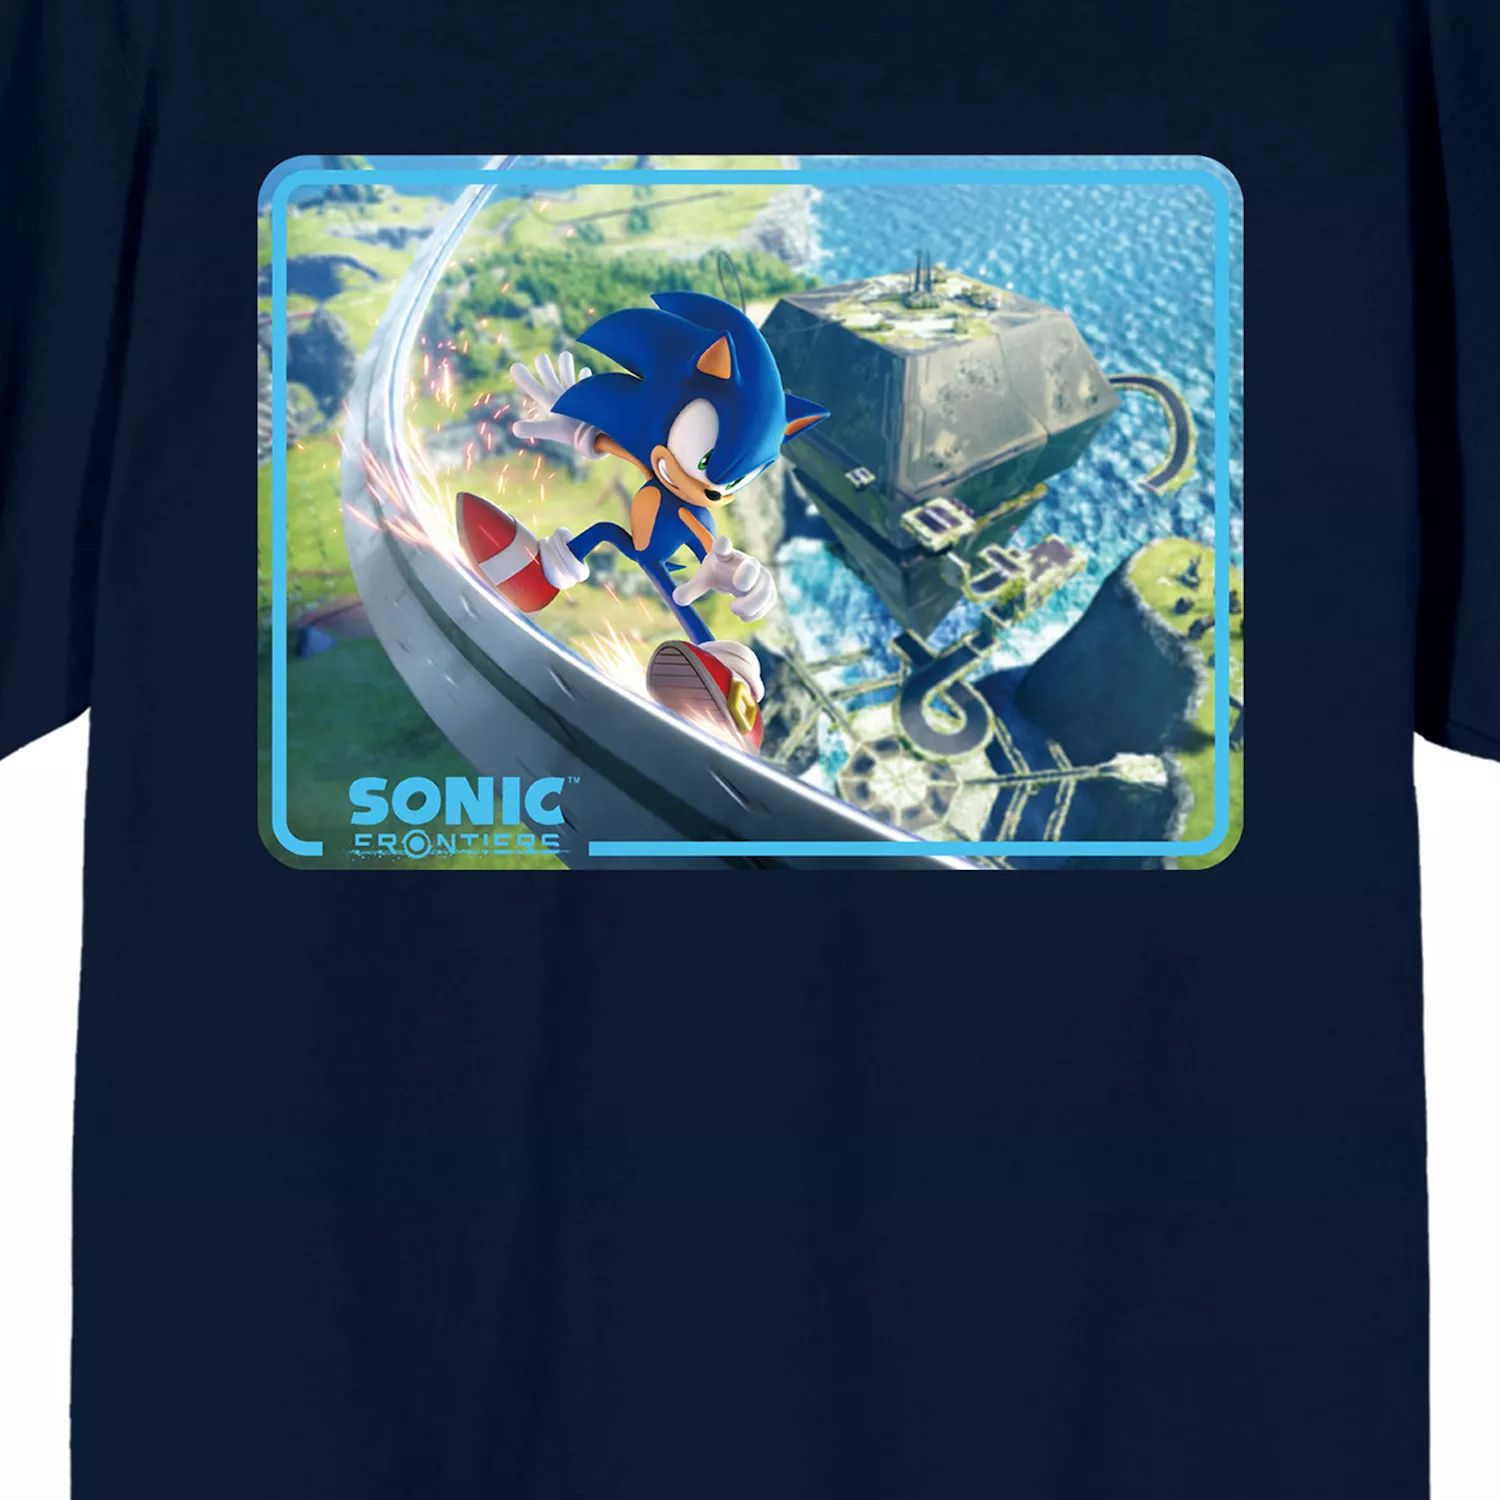 Мужская футболка с графическим рисунком Sonic Frontiers Videogame Licensed Character sonic frontiers [switch]